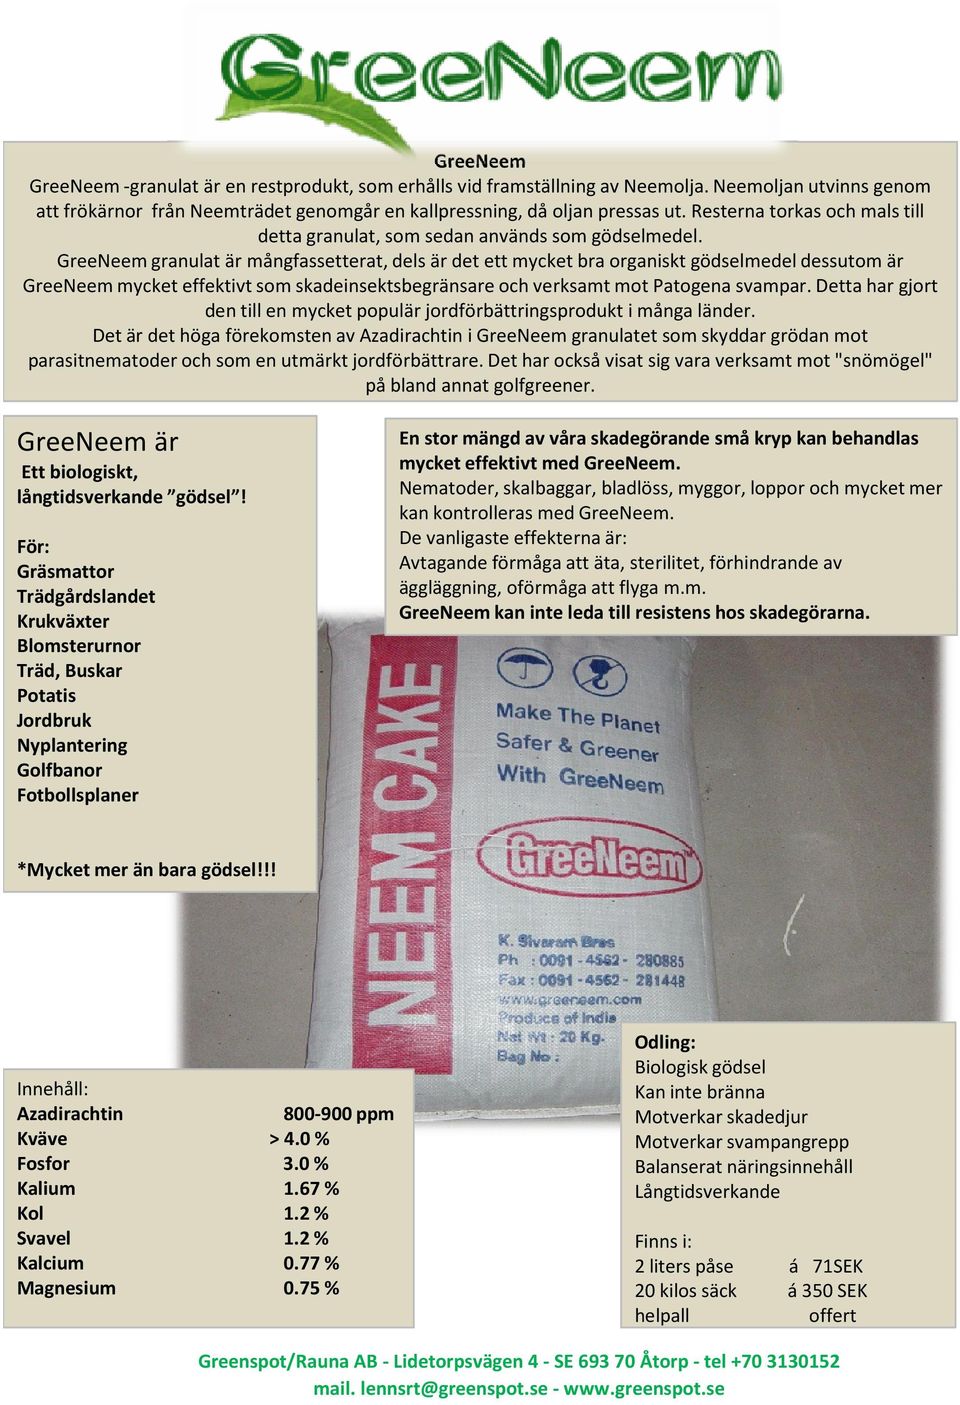 GreeNeem granulat är mångfassetterat, dels är det ett mycket bra organiskt gödselmedel dessutom är GreeNeem mycket effektivt som skadeinsektsbegränsare och verksamt mot Patogena svampar.